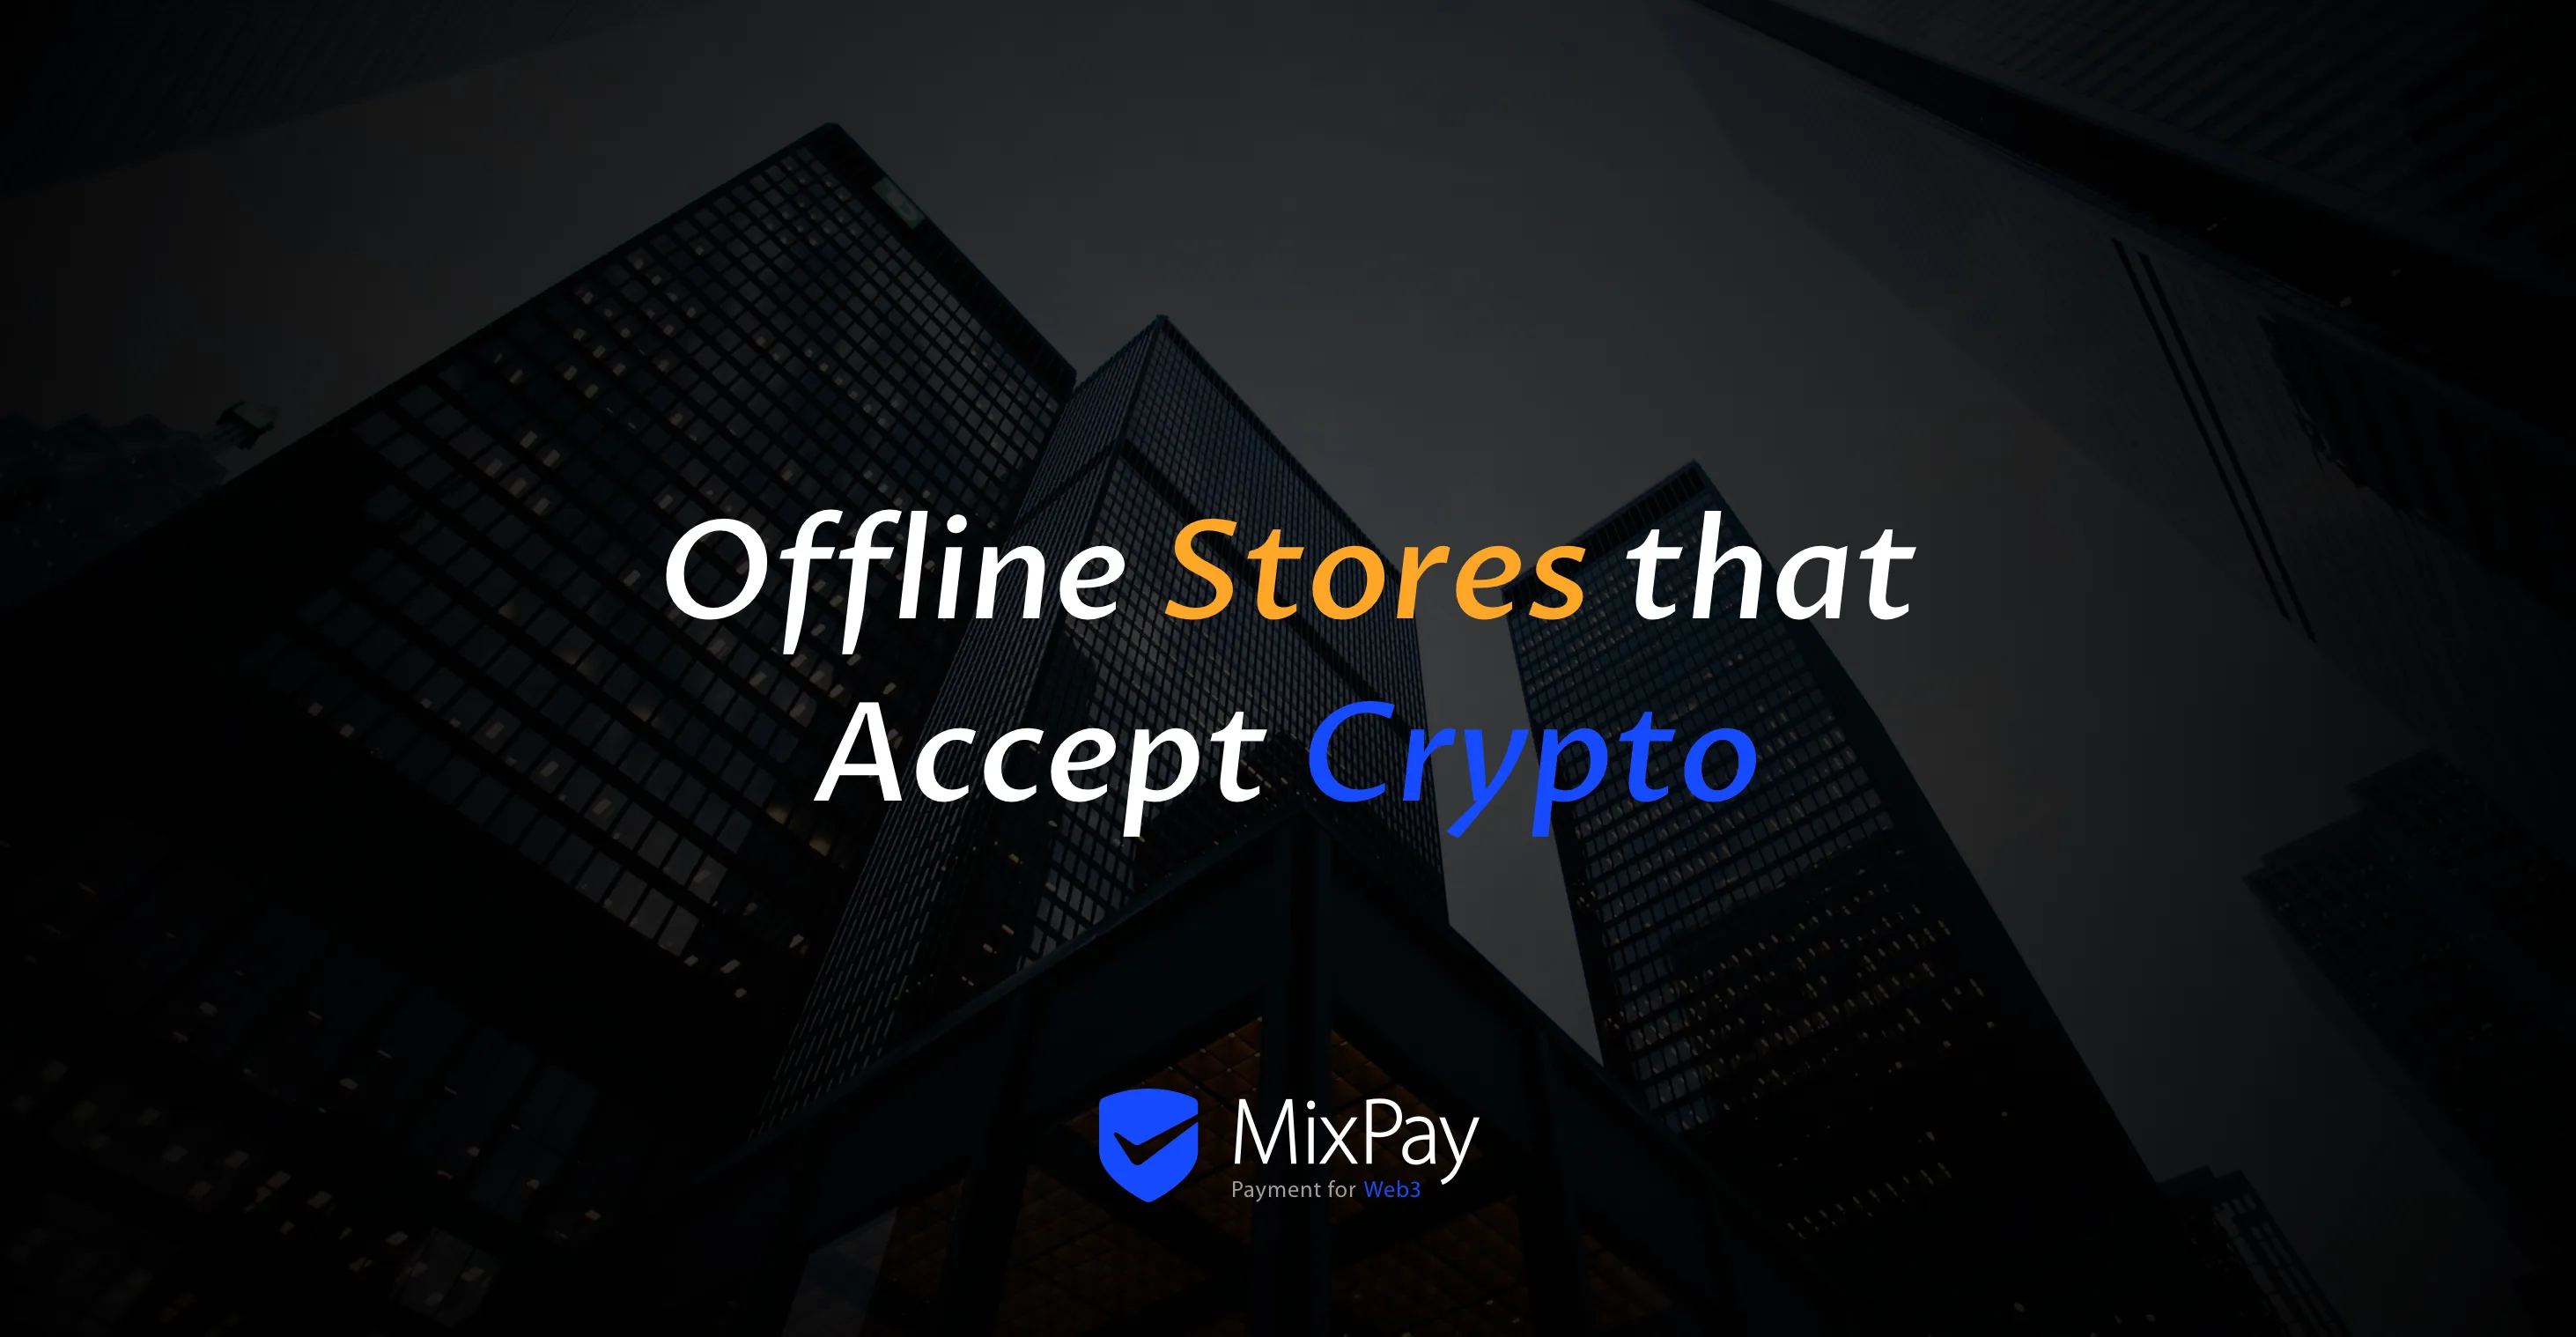 Offline butikker, der accepterer kryptovaluta med MixPay